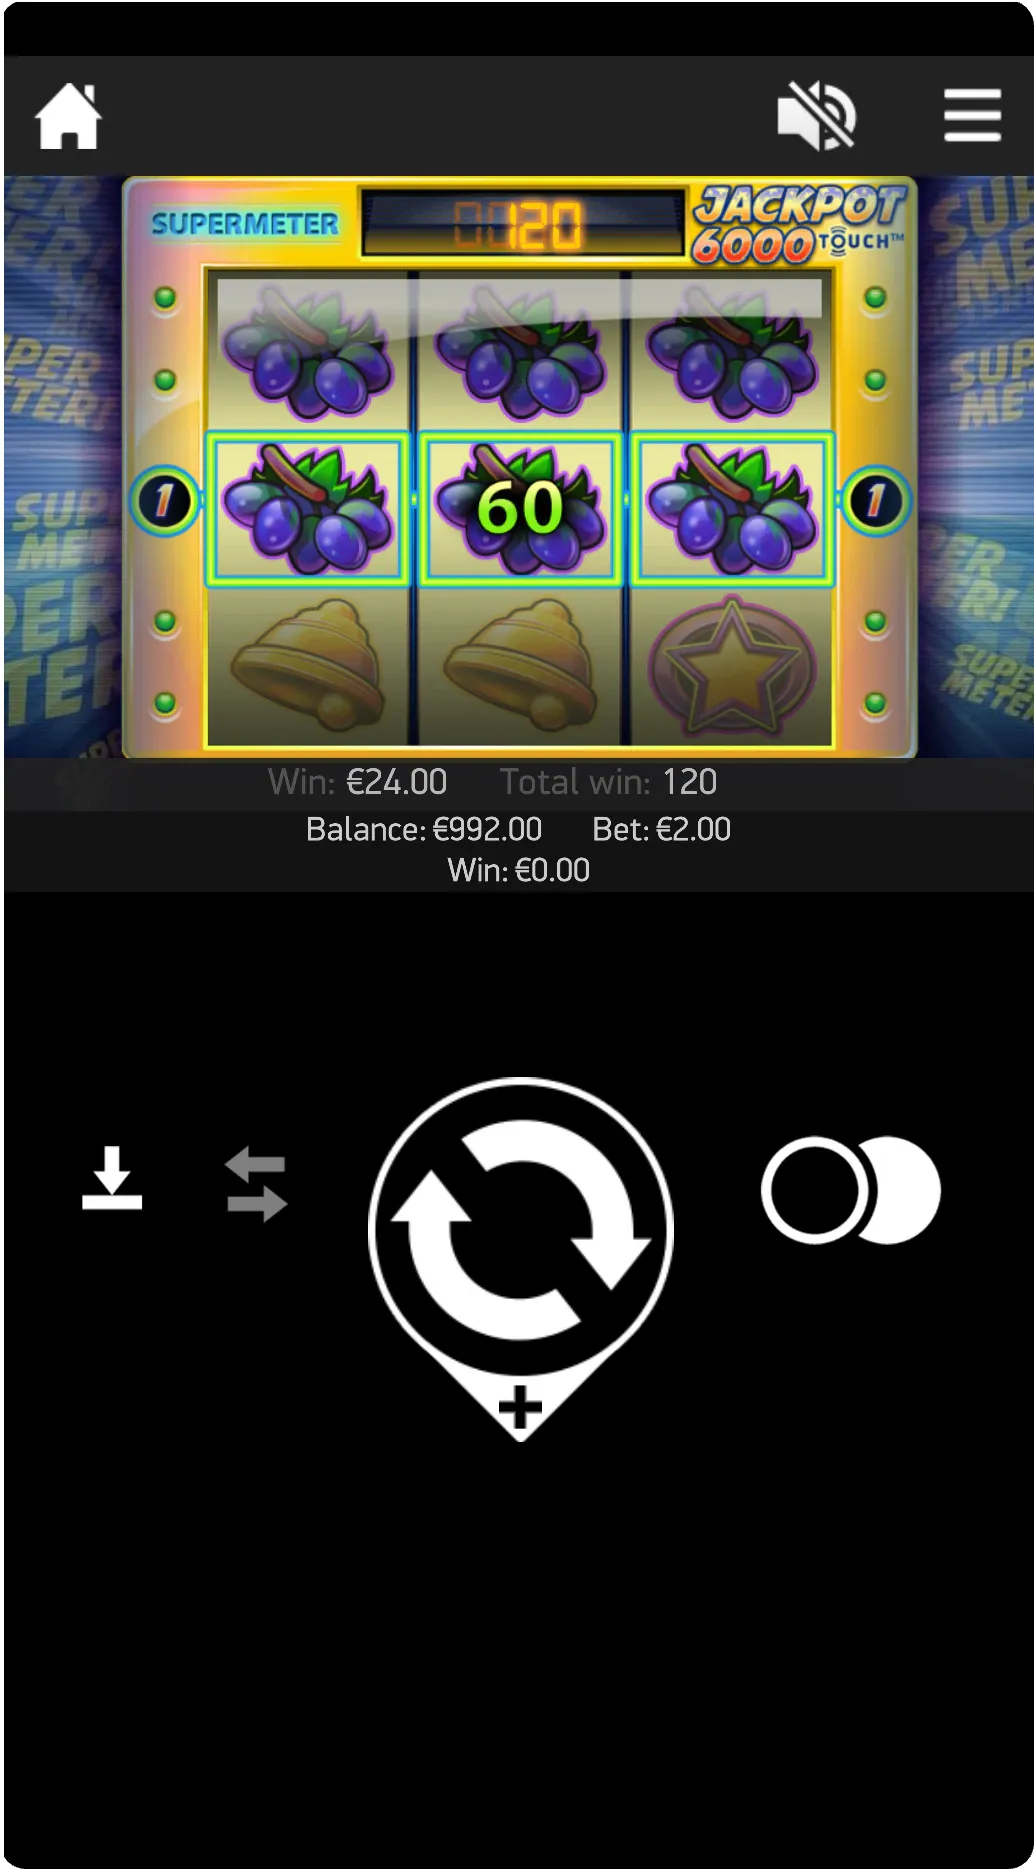 Hovedskjermen for Jackpot 6000 med spillvalg